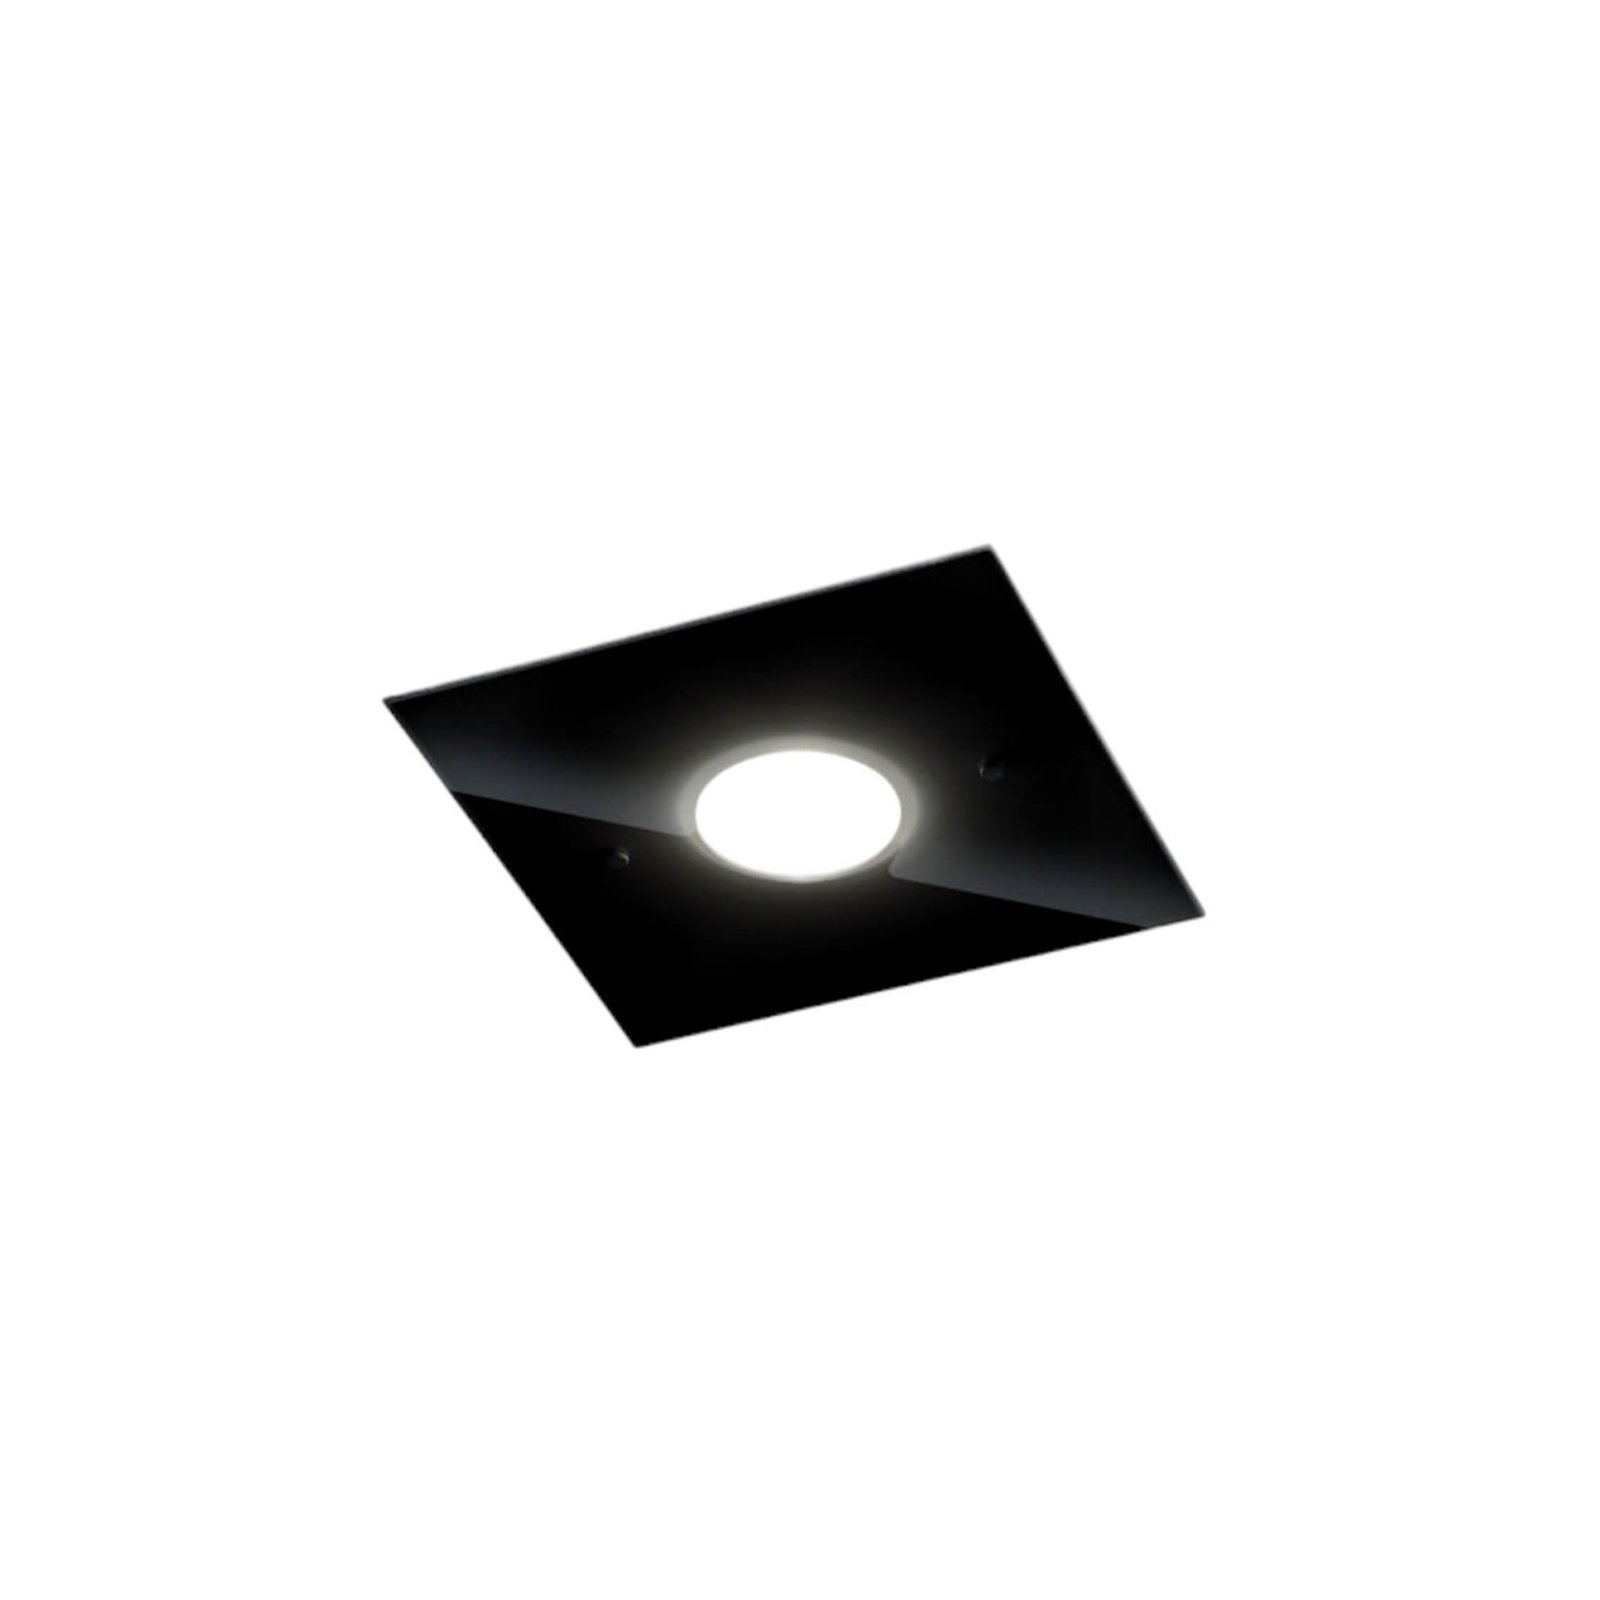 Helestra Nomi lampa sufitowa LED 23x23cm czarna